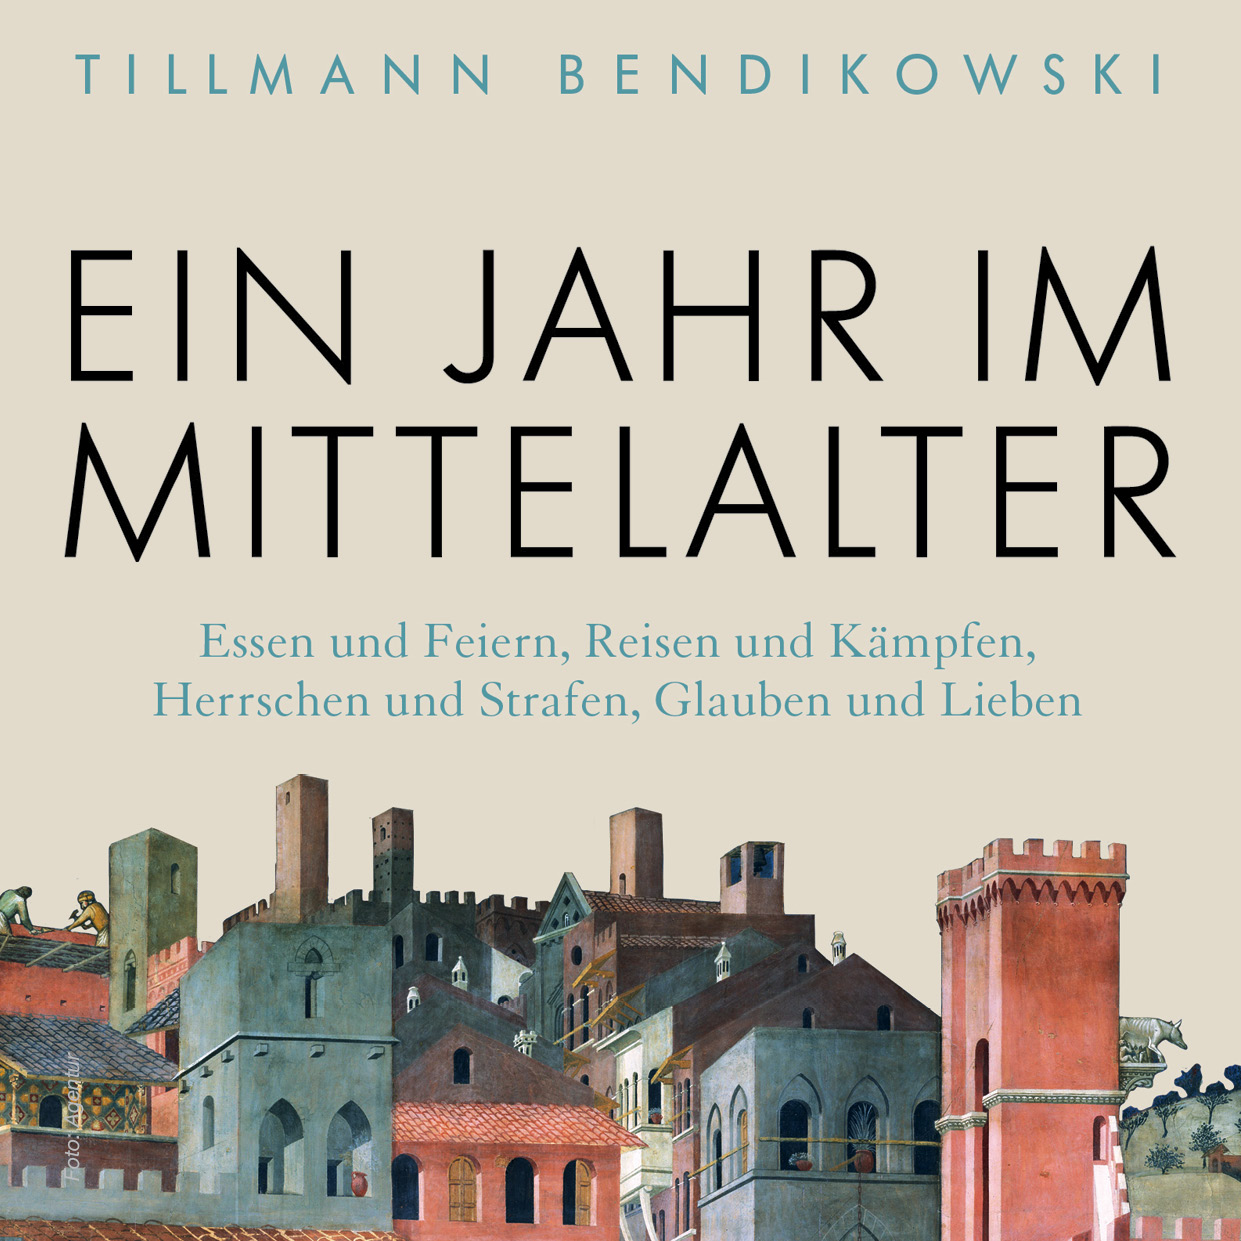 06.08.21 Tillmann Bendikowski "Ein Jahr im Mittelalter"